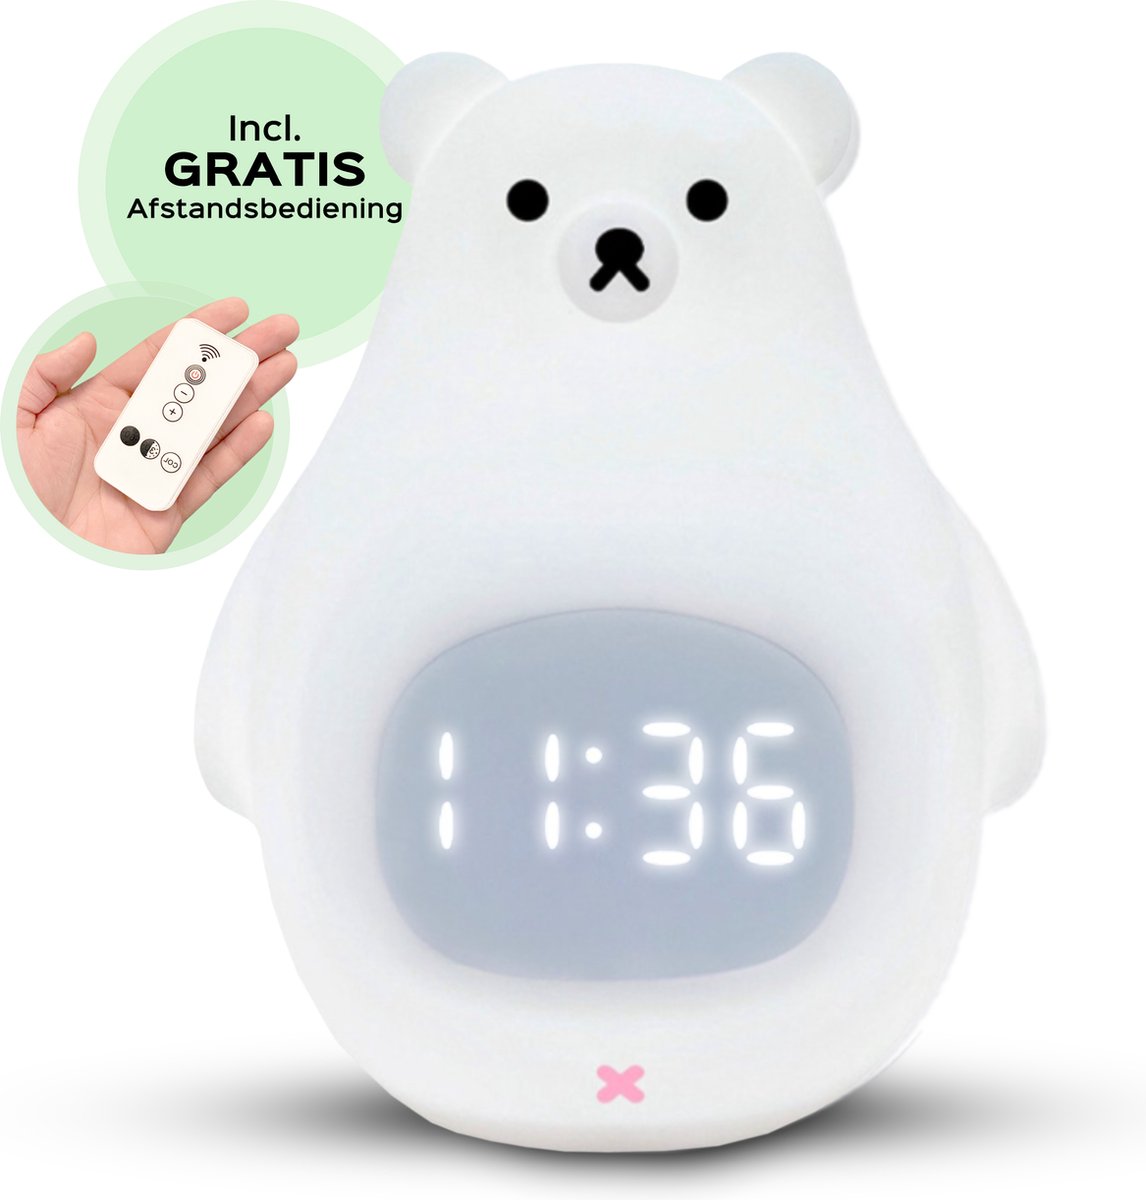 Baby Secure Digitale Slaaptrainer - 8 Kleuren met Afstandsbediening - Wekker voor Kinderen - Oplaadbaar - Kinderwekker Beer - met Dimfunctie - Nachtlamp - Wit / Multicolor